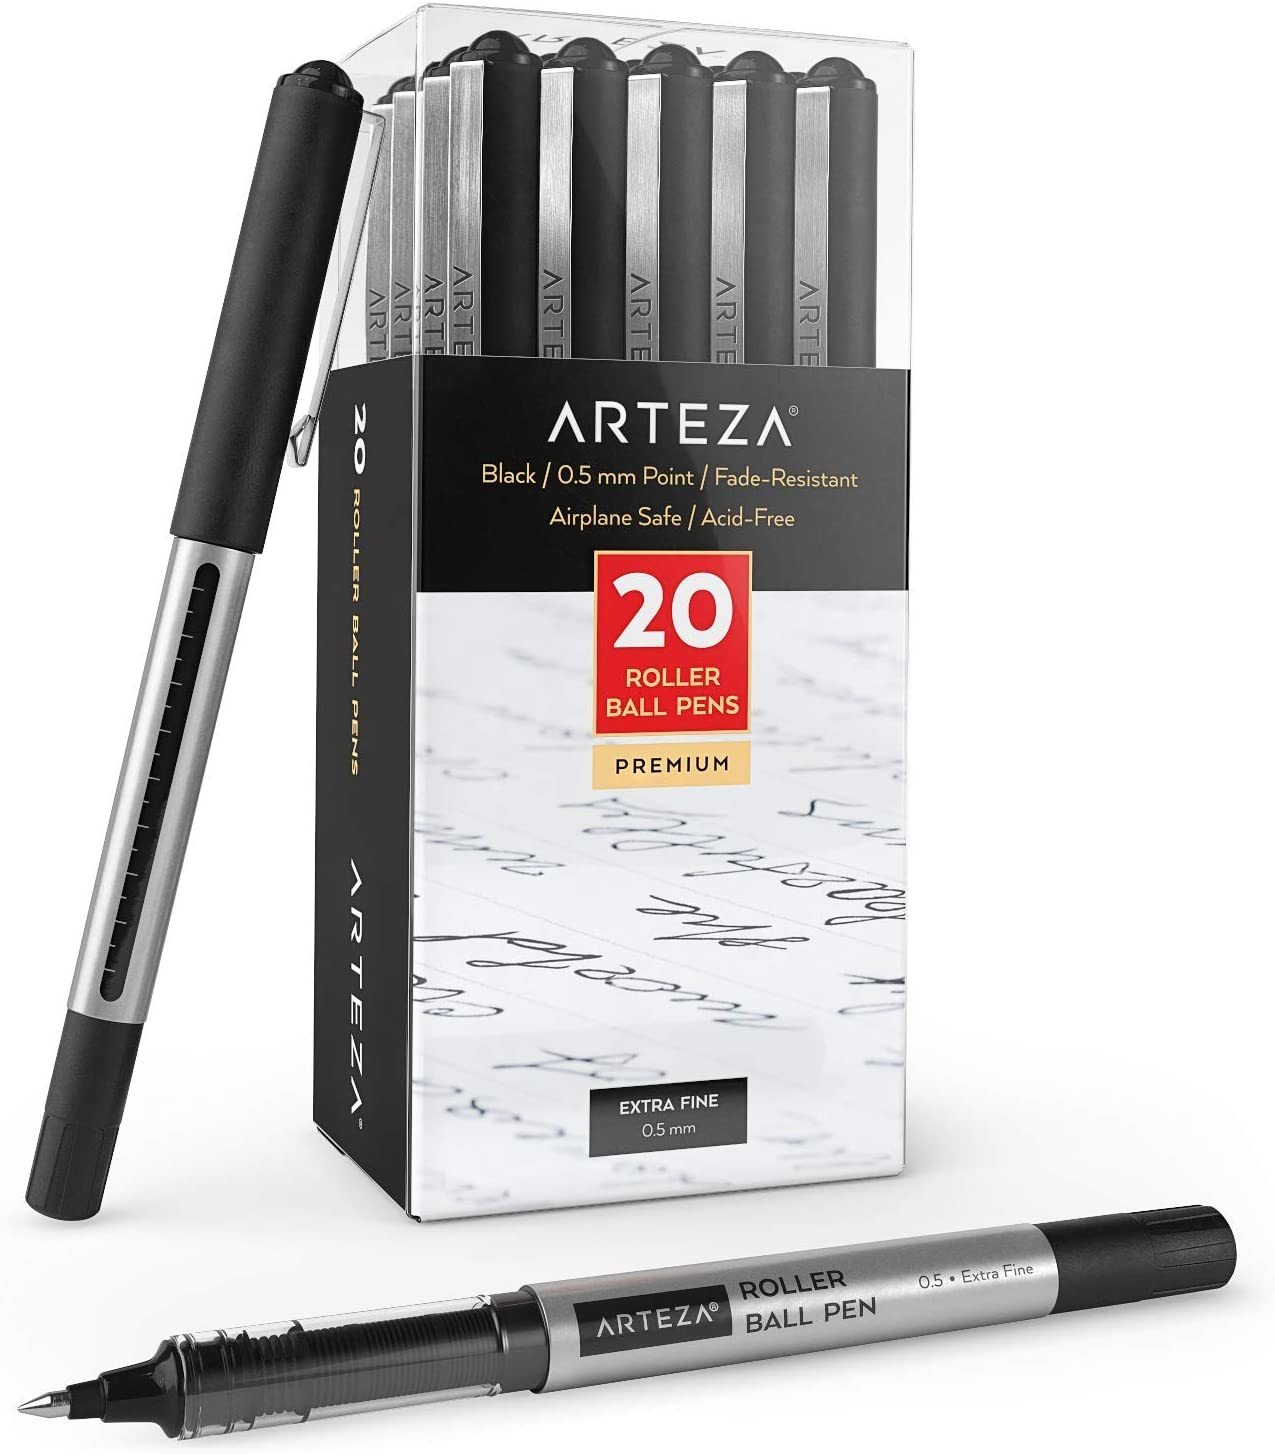 Arteza Retractable Gel Ink Pens, Vintage & Bright Colors - Set of 24